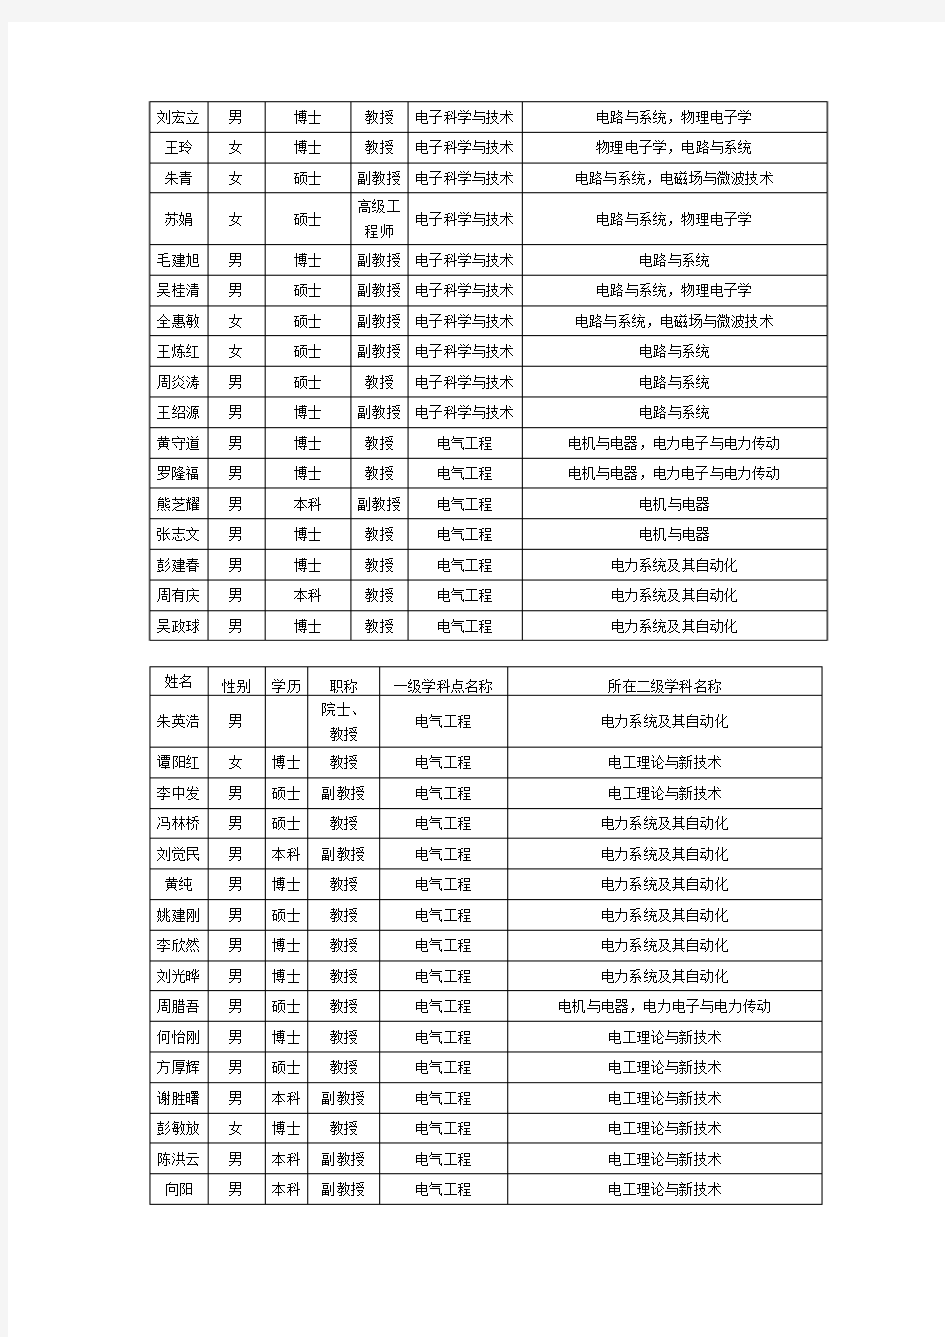 湖南大学电气与信息工程学院教师名单